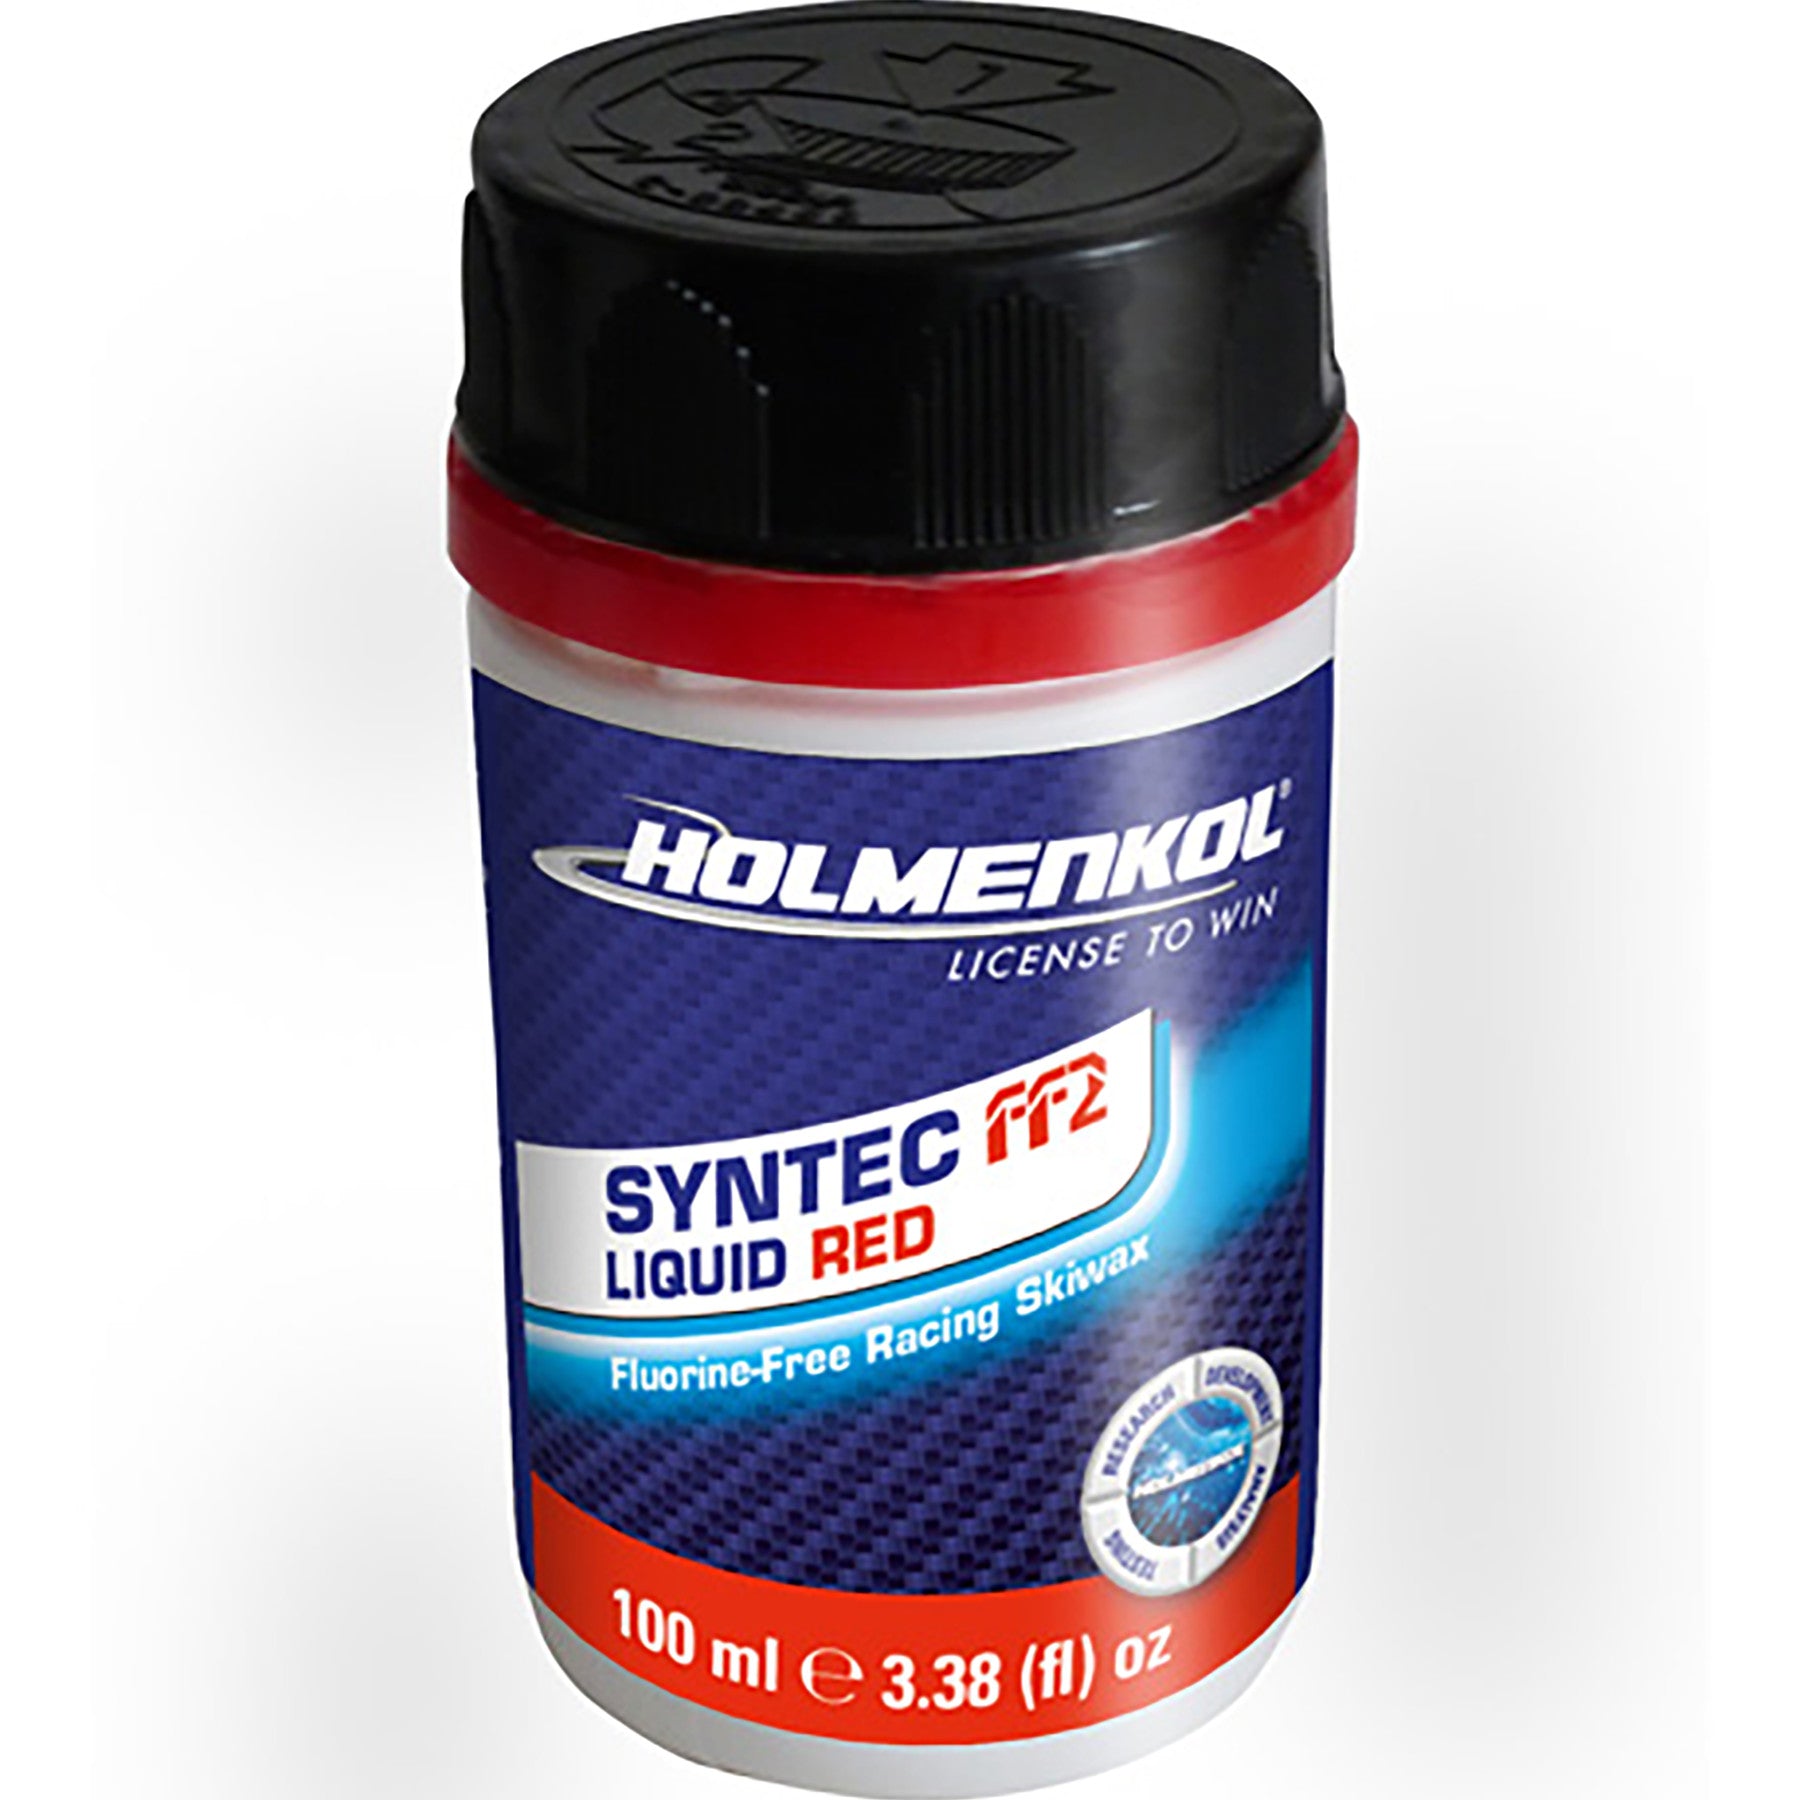 Holmenkol Syntec FF2 Liquid Wax-4